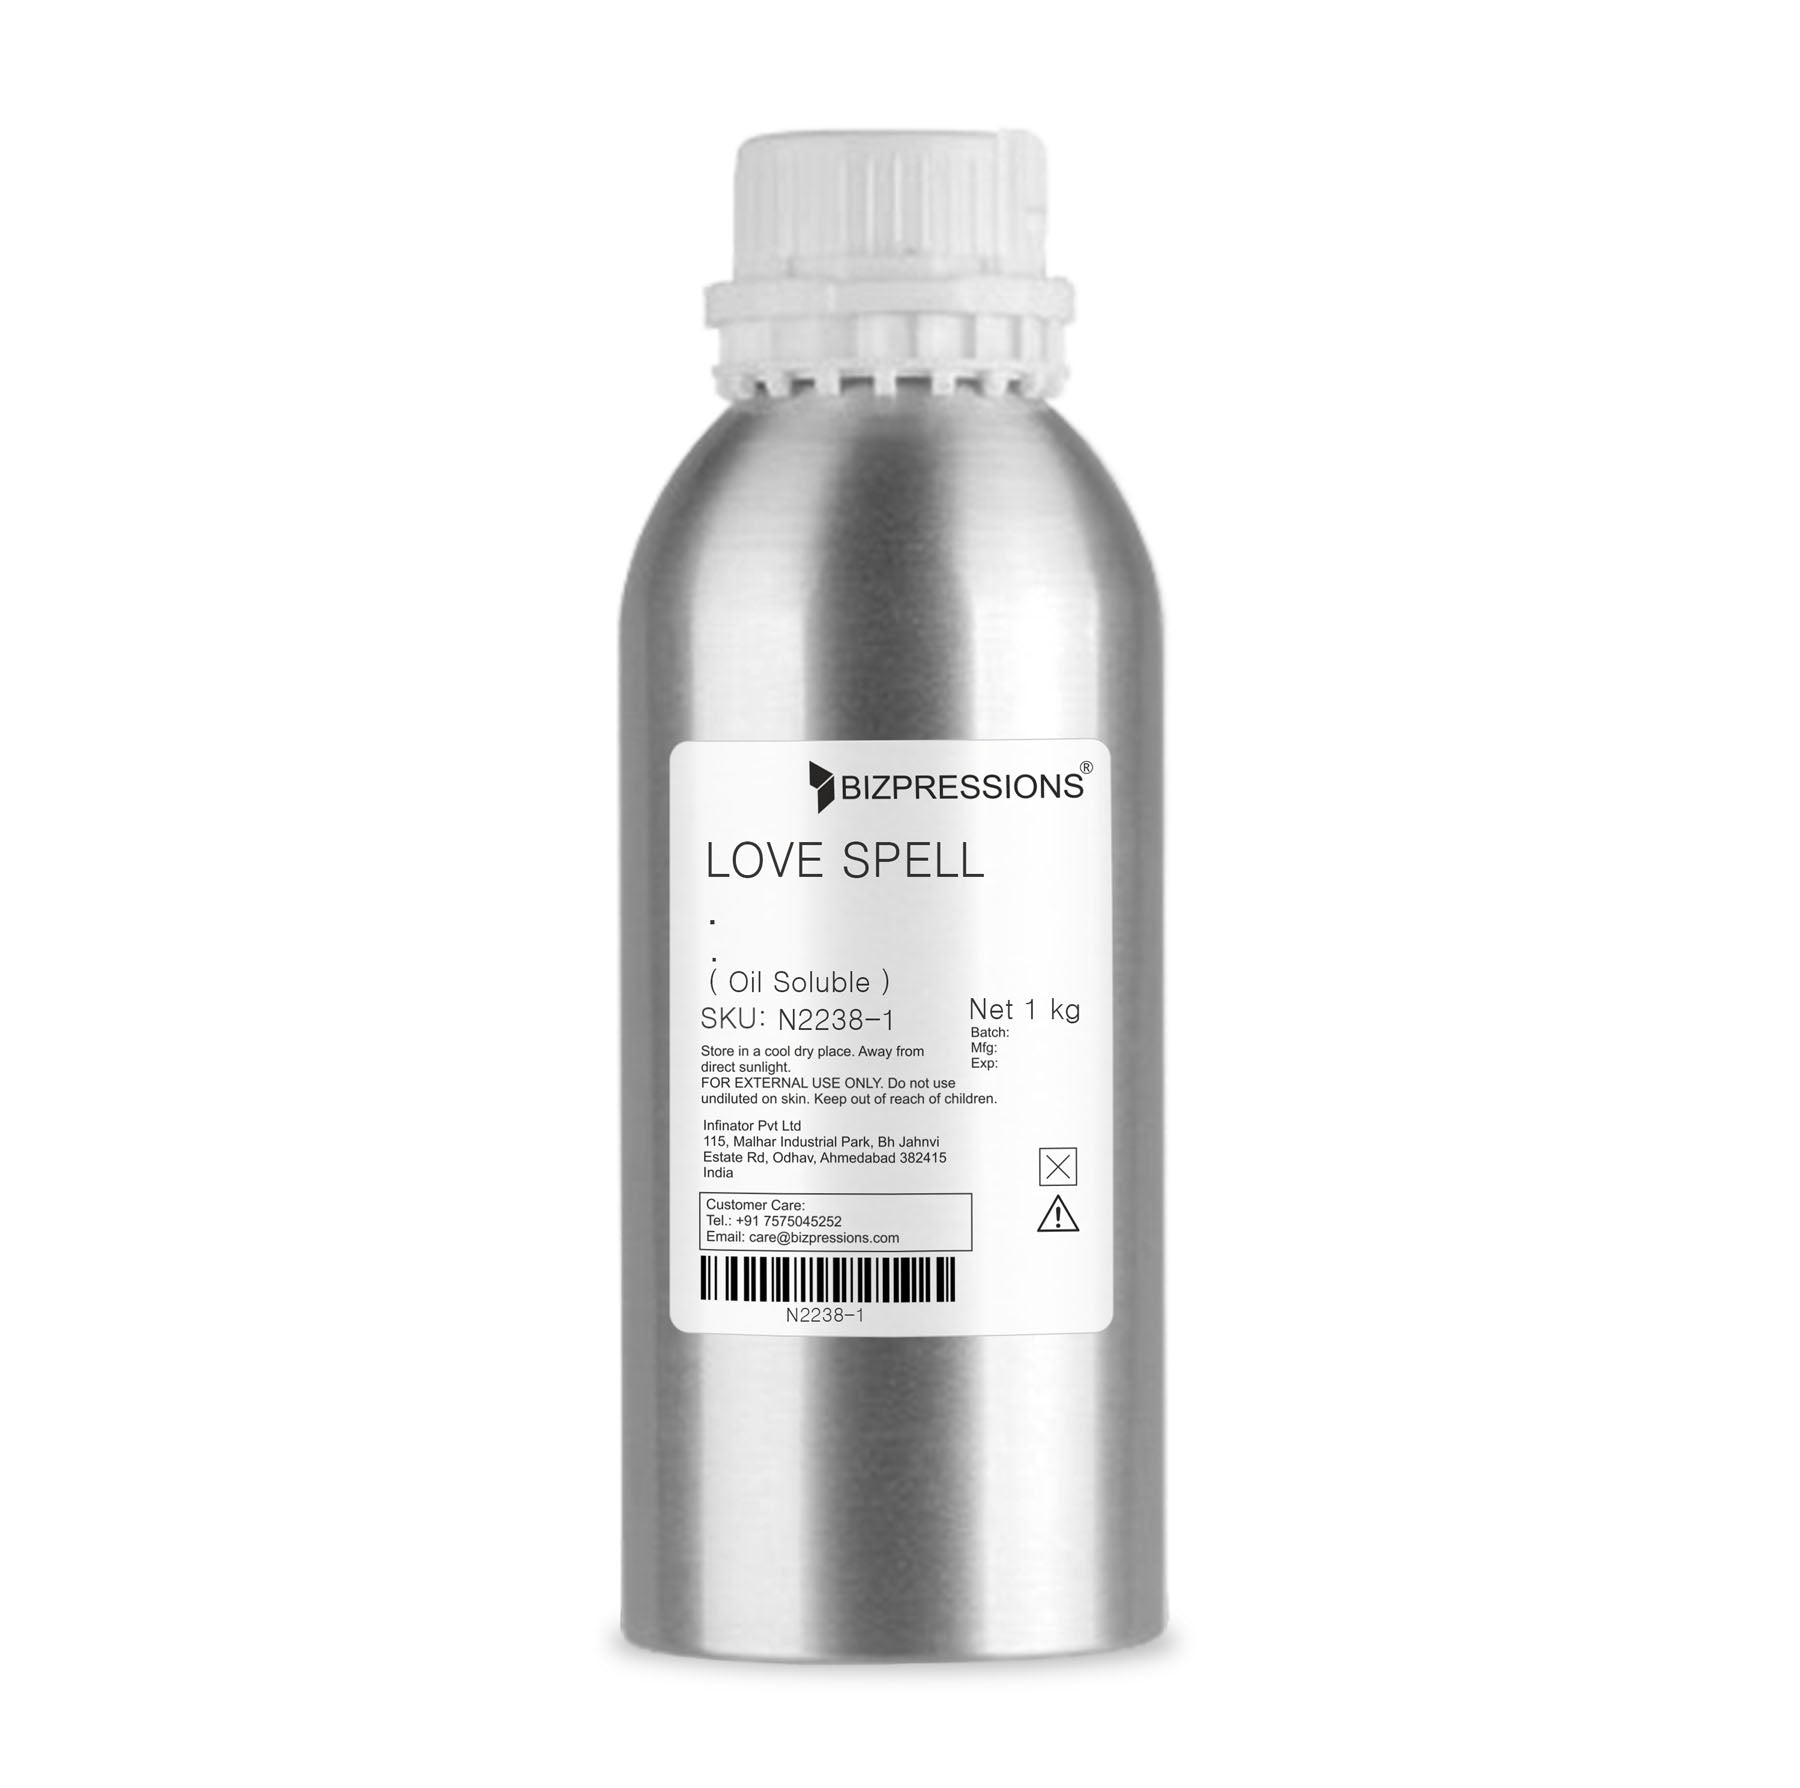 LOVE SPELL - Fragrance ( Oil Soluble ) - 1 kg